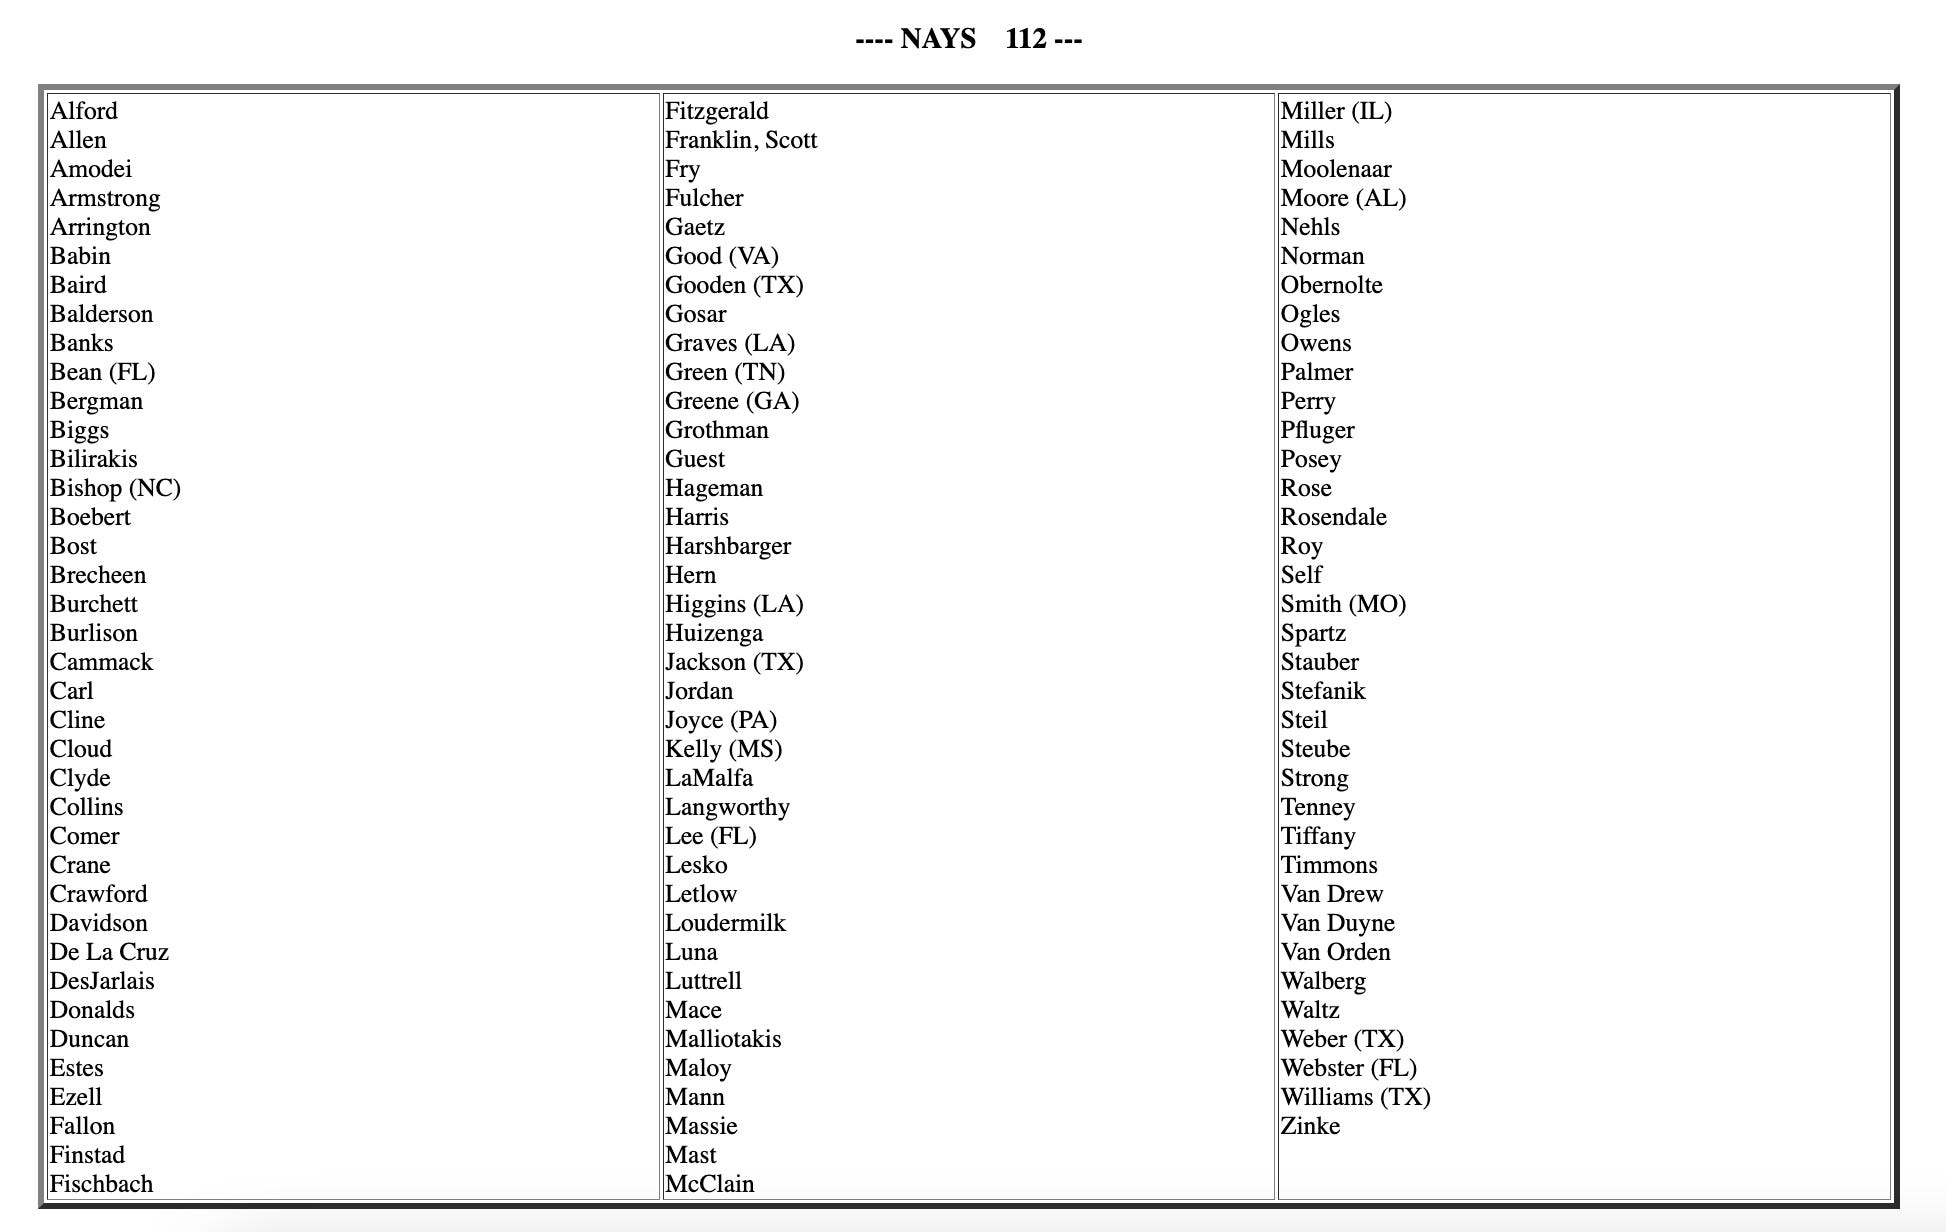 Die 112 Republikaner im Repräsentantenhaus, die am Samstag gegen die Ukraine-Hilfe gestimmt haben.